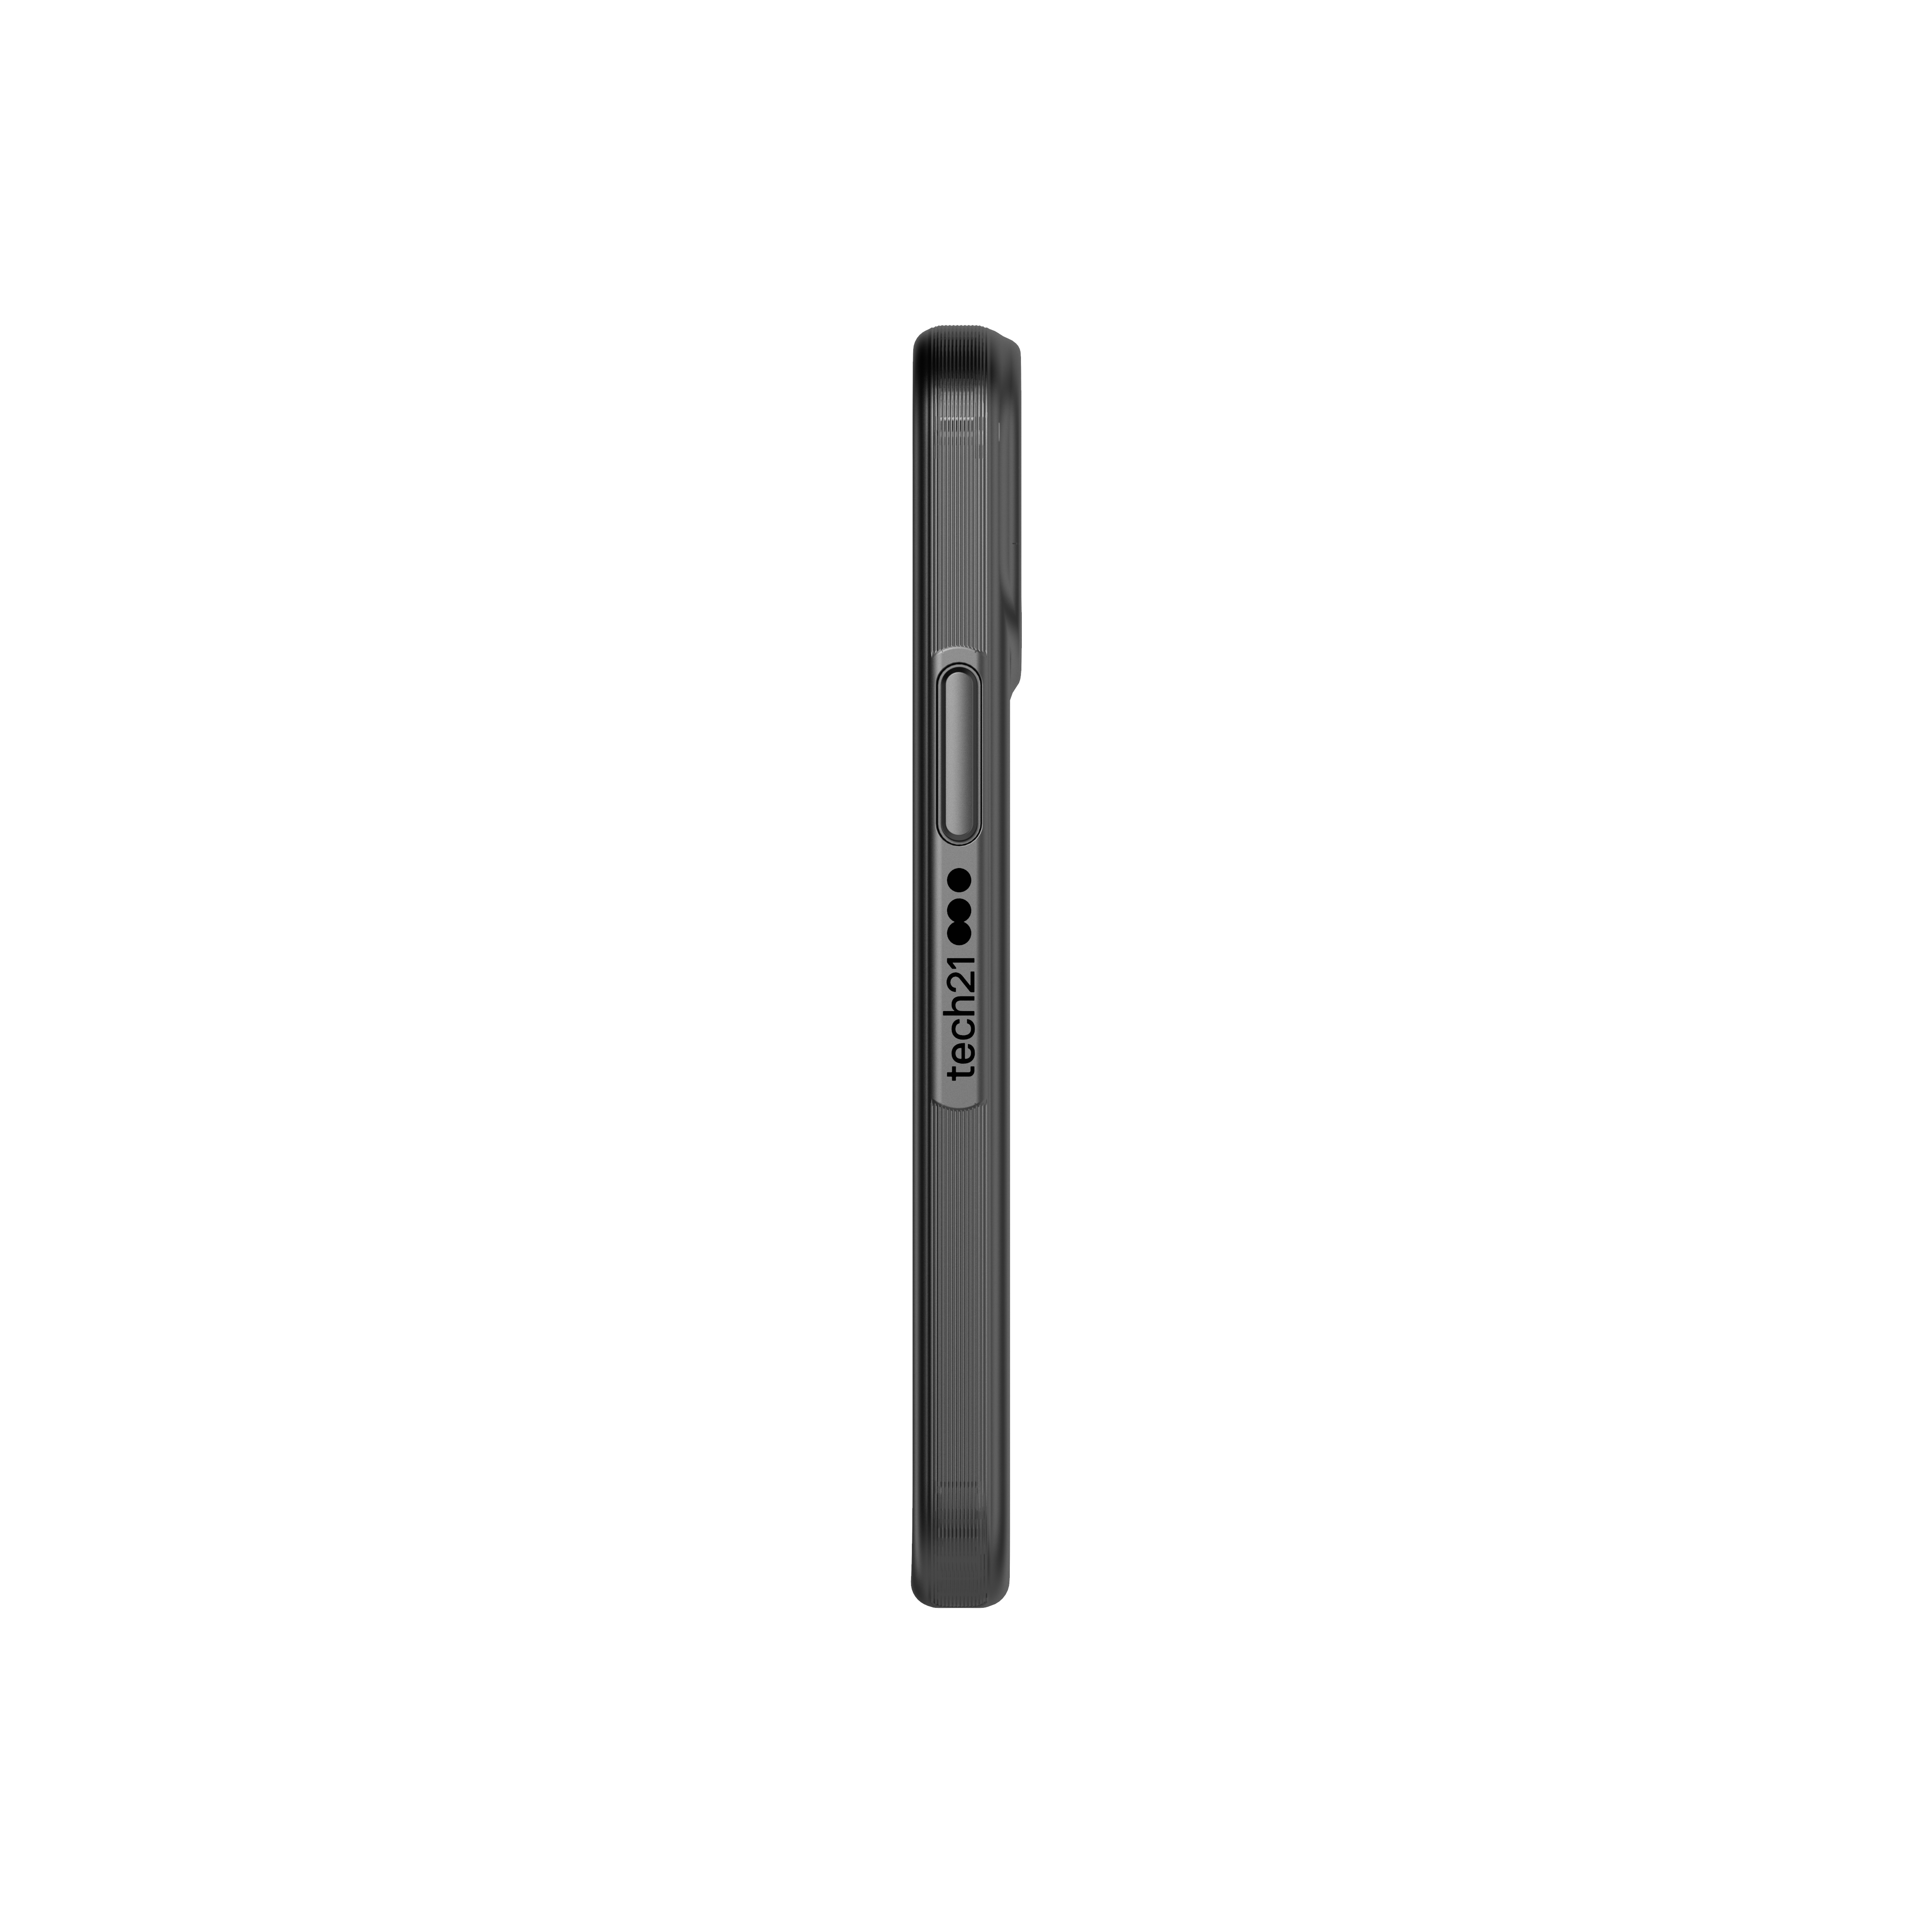 Evo Slim Case iPhone 12 Mini Charcoal Black